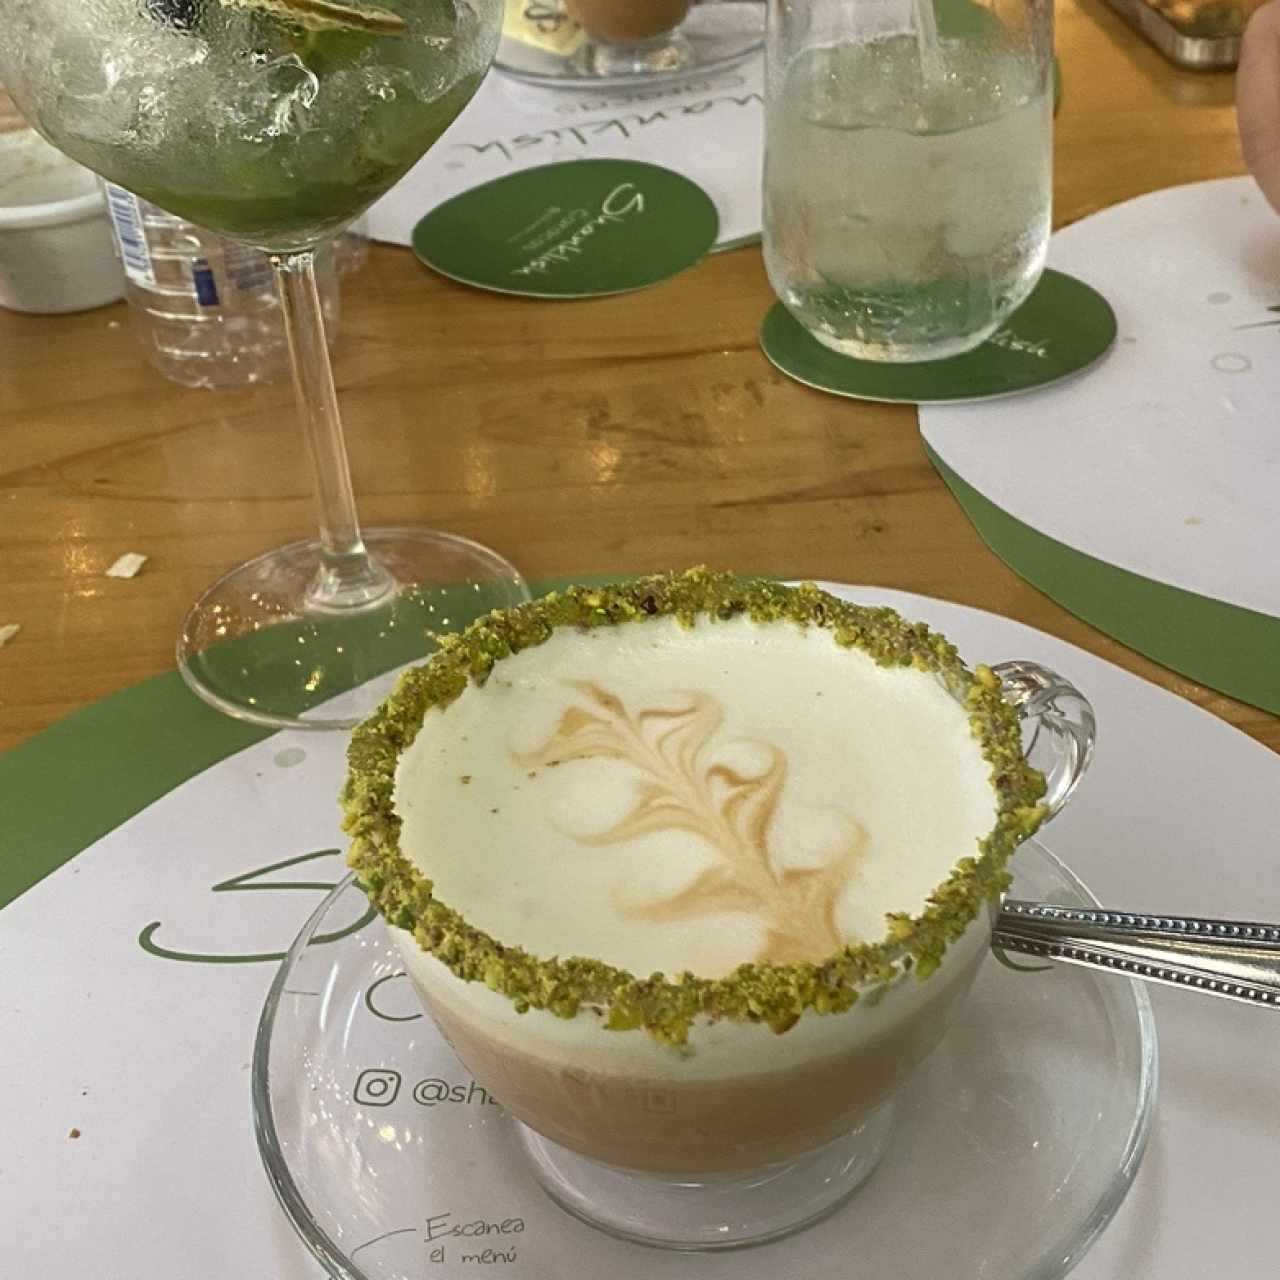 Cafes - Cappucino, latte, mocacciono